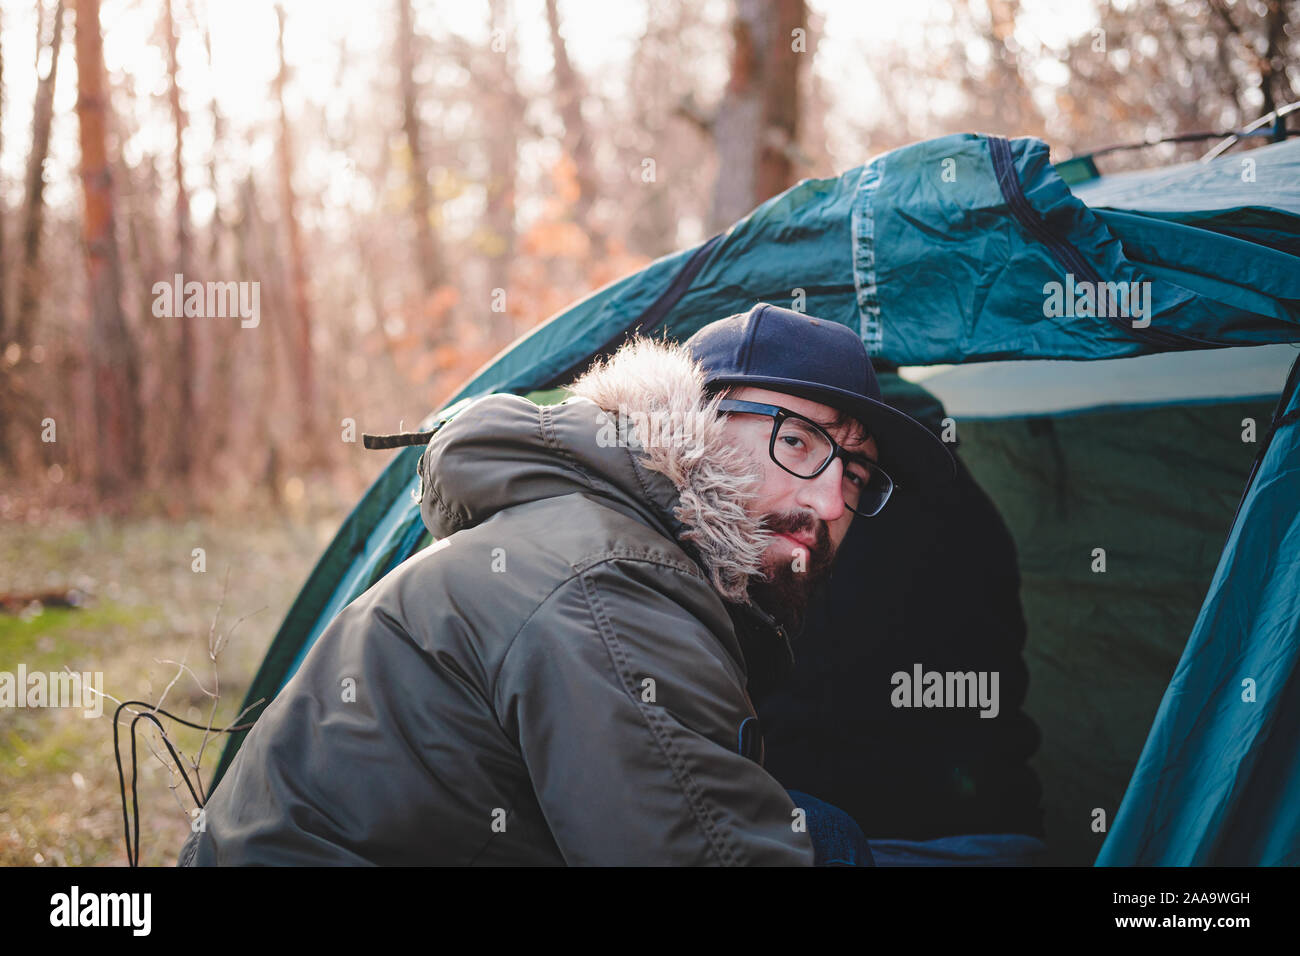 Retrato de un perro en suéter caliente y leñador hat afuera. Staffordshire terrier se sienta por el fuego en un camping y goza de clima frío otoño Foto de stock